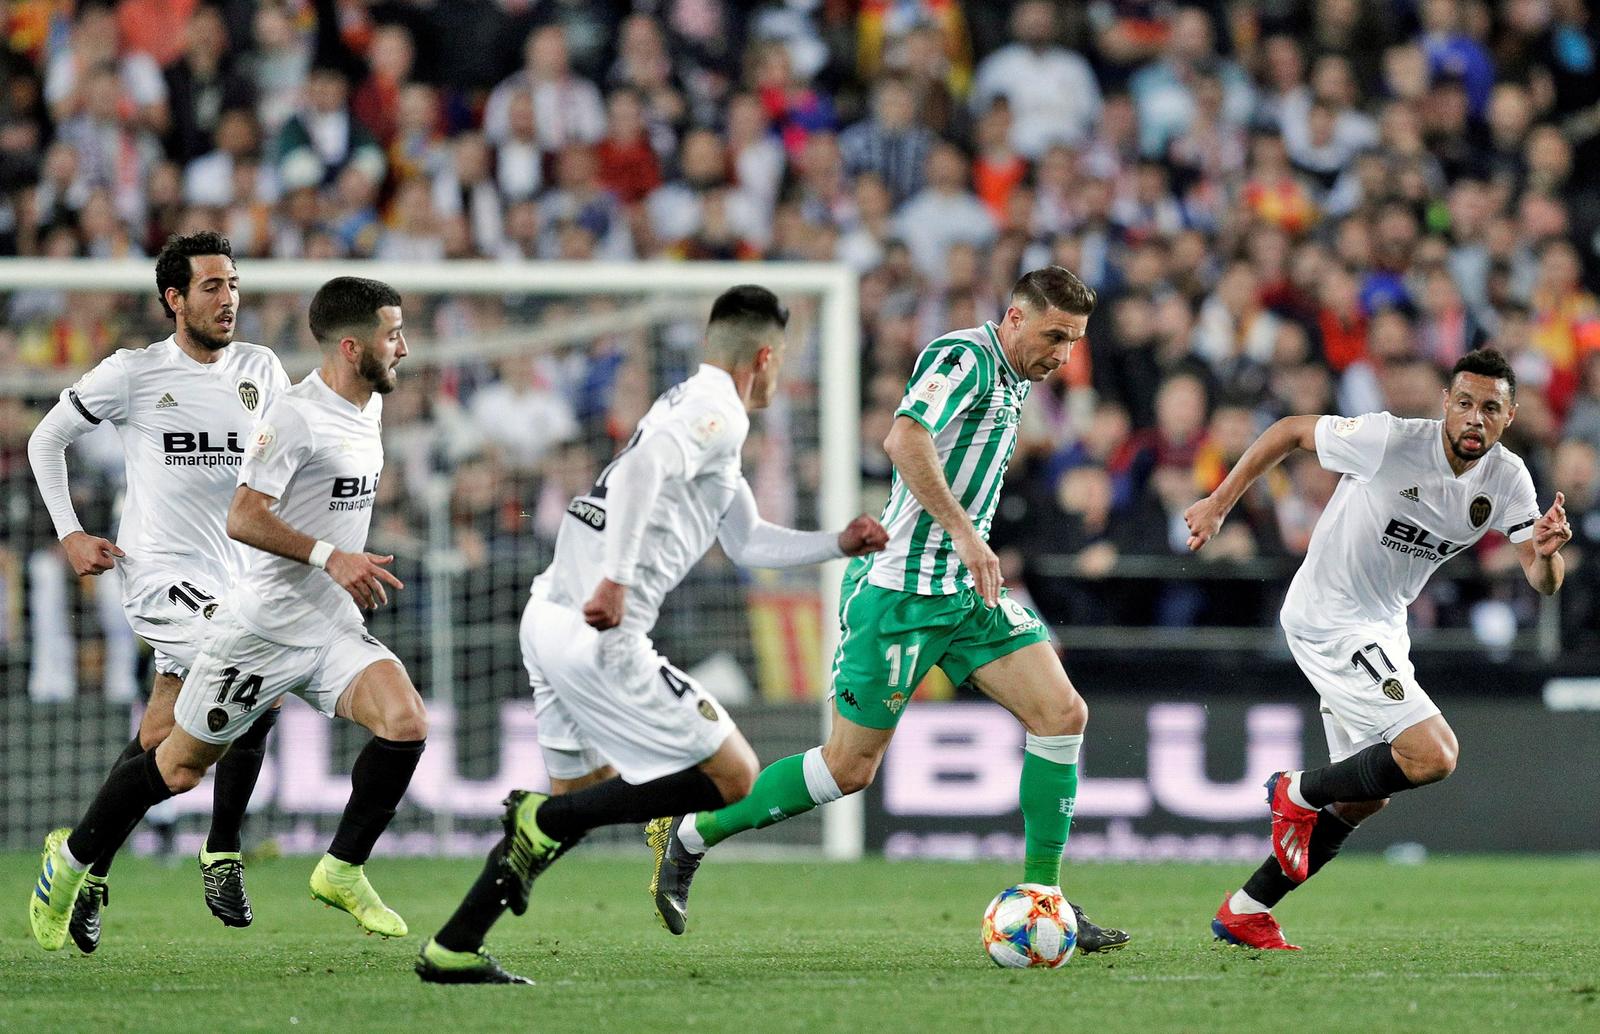 El centrocampista Real Betis Joaquín trata de controlar el balón rodeado de jugadores del Valencia CF en el partido de vuelta de las semifinales de la Copa del Rey que se disputa esta noche en el Estadio de Mestalla.